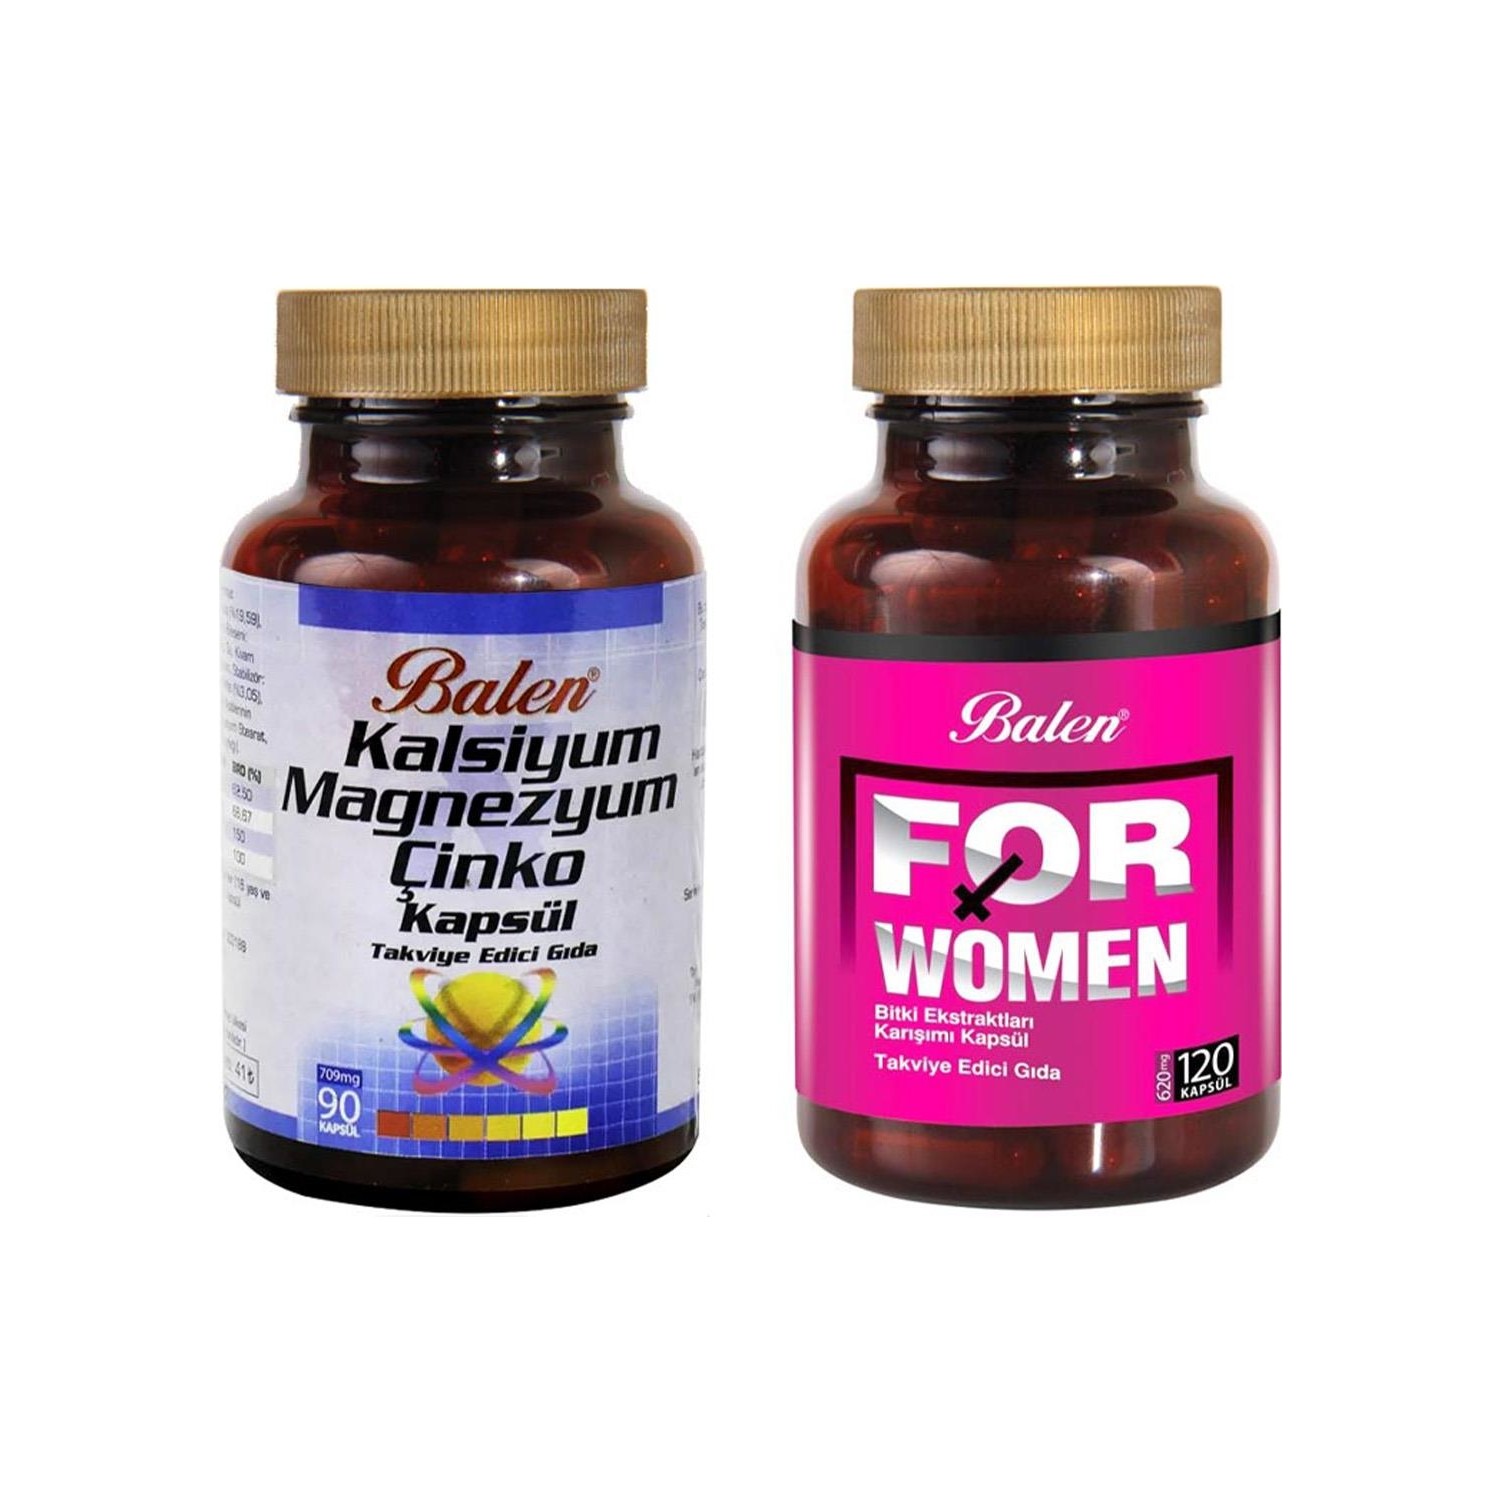 Активная добавка Balen For Woman, 120 капсул, 500 мг + Витаминный комплекс Balen Calcium Magnesium Zinc, 90 капсул, 709 мг